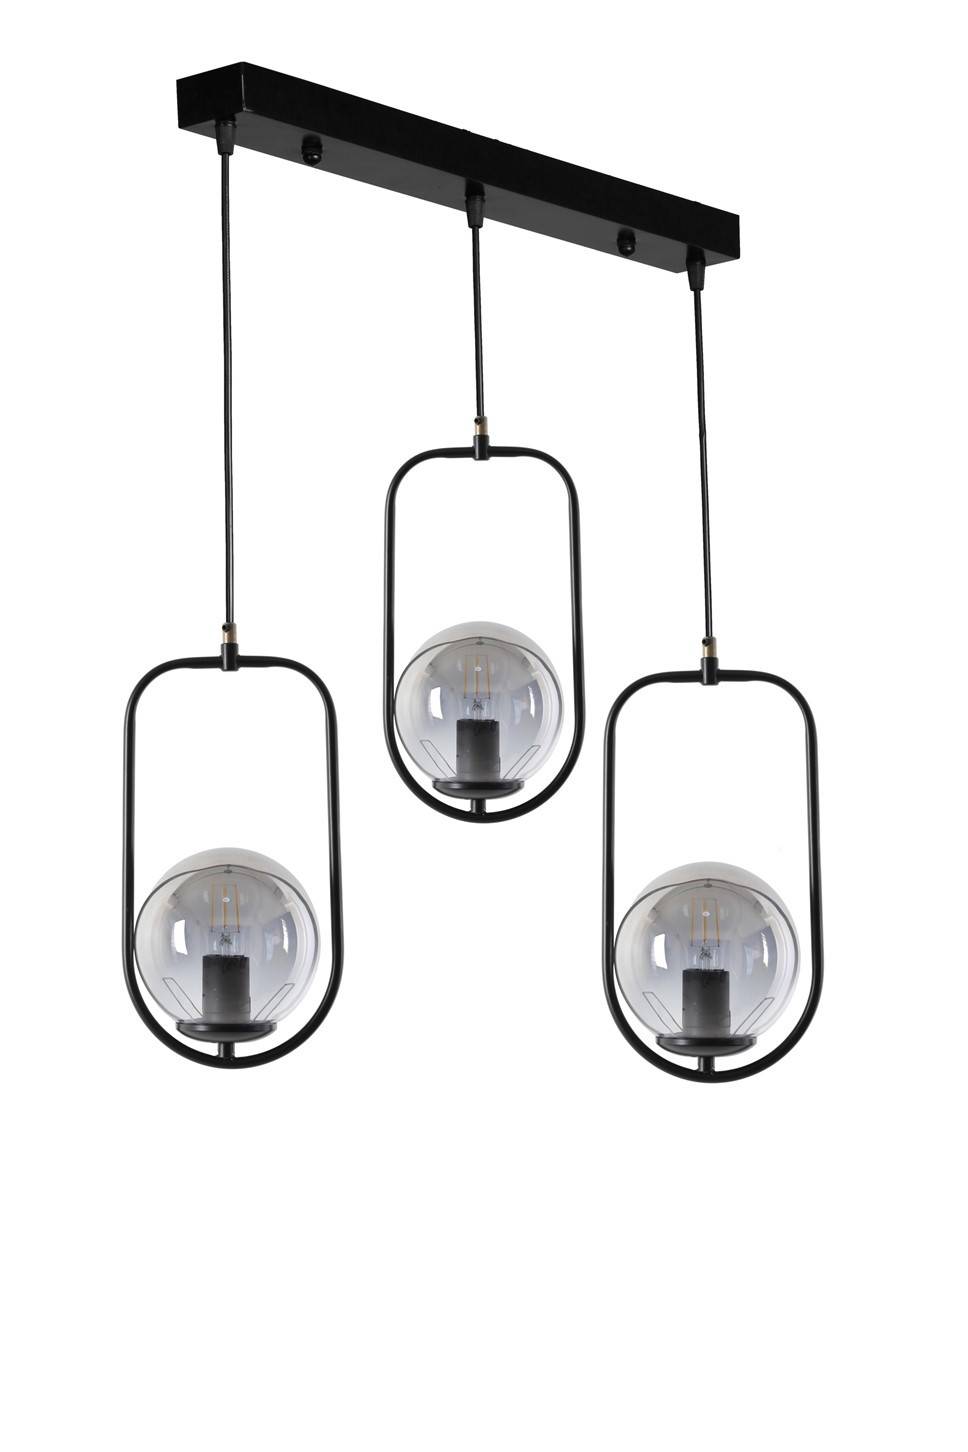 Plafondinbouw armatuur met 3 ovale gecirkelde globes in lijn saccade Bulla H70 cm Metaal Glas Zwart Rook